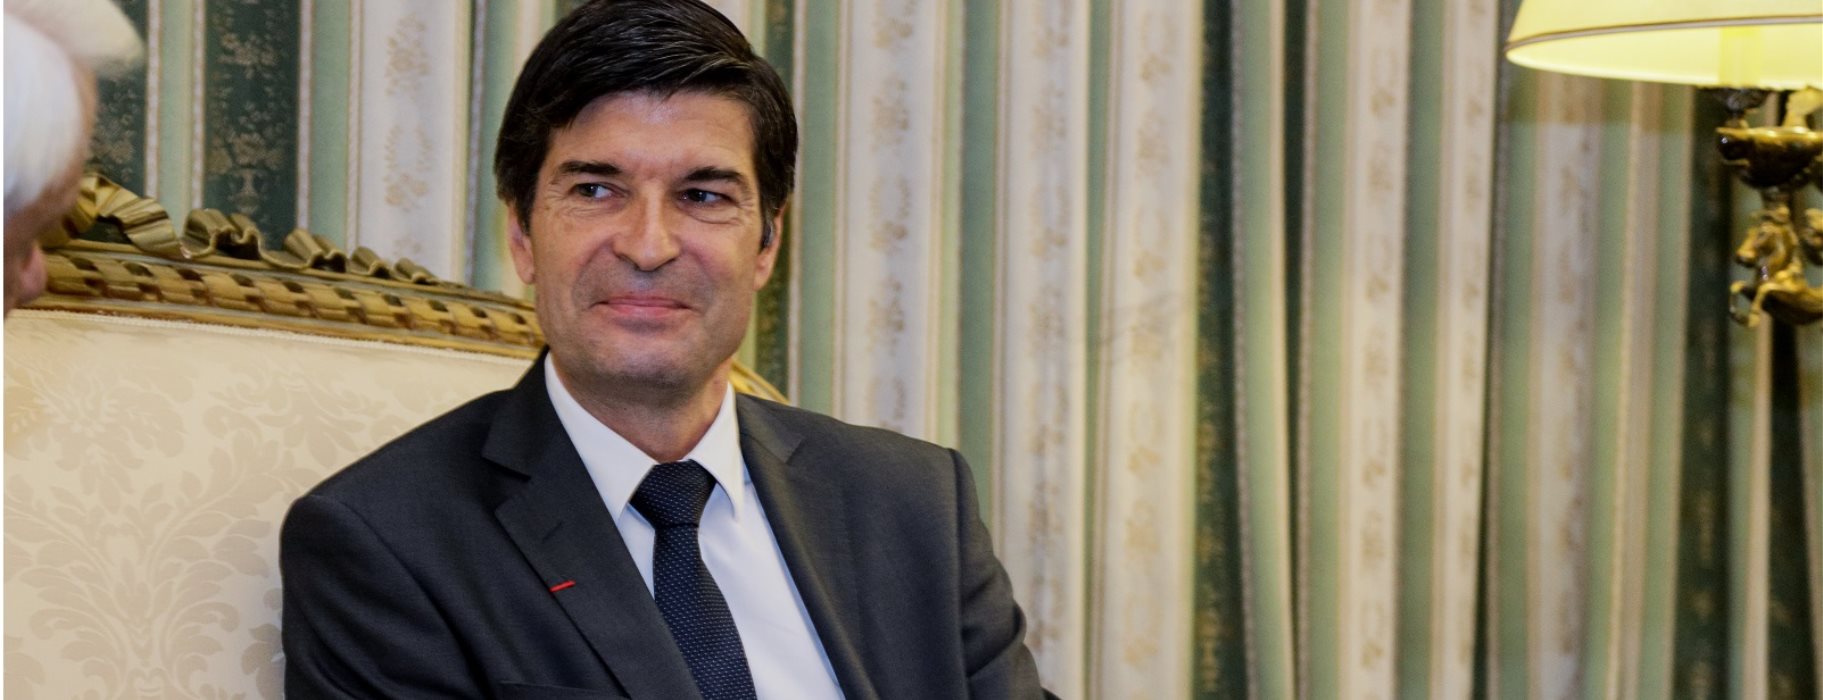 Γάλλος πρέσβης στην Ελλάδα: «”Ψευτοσυμφωνία” το Μνημόνιο Κατανόησης μεταξύ της Τουρκίας και της Λιβύης»